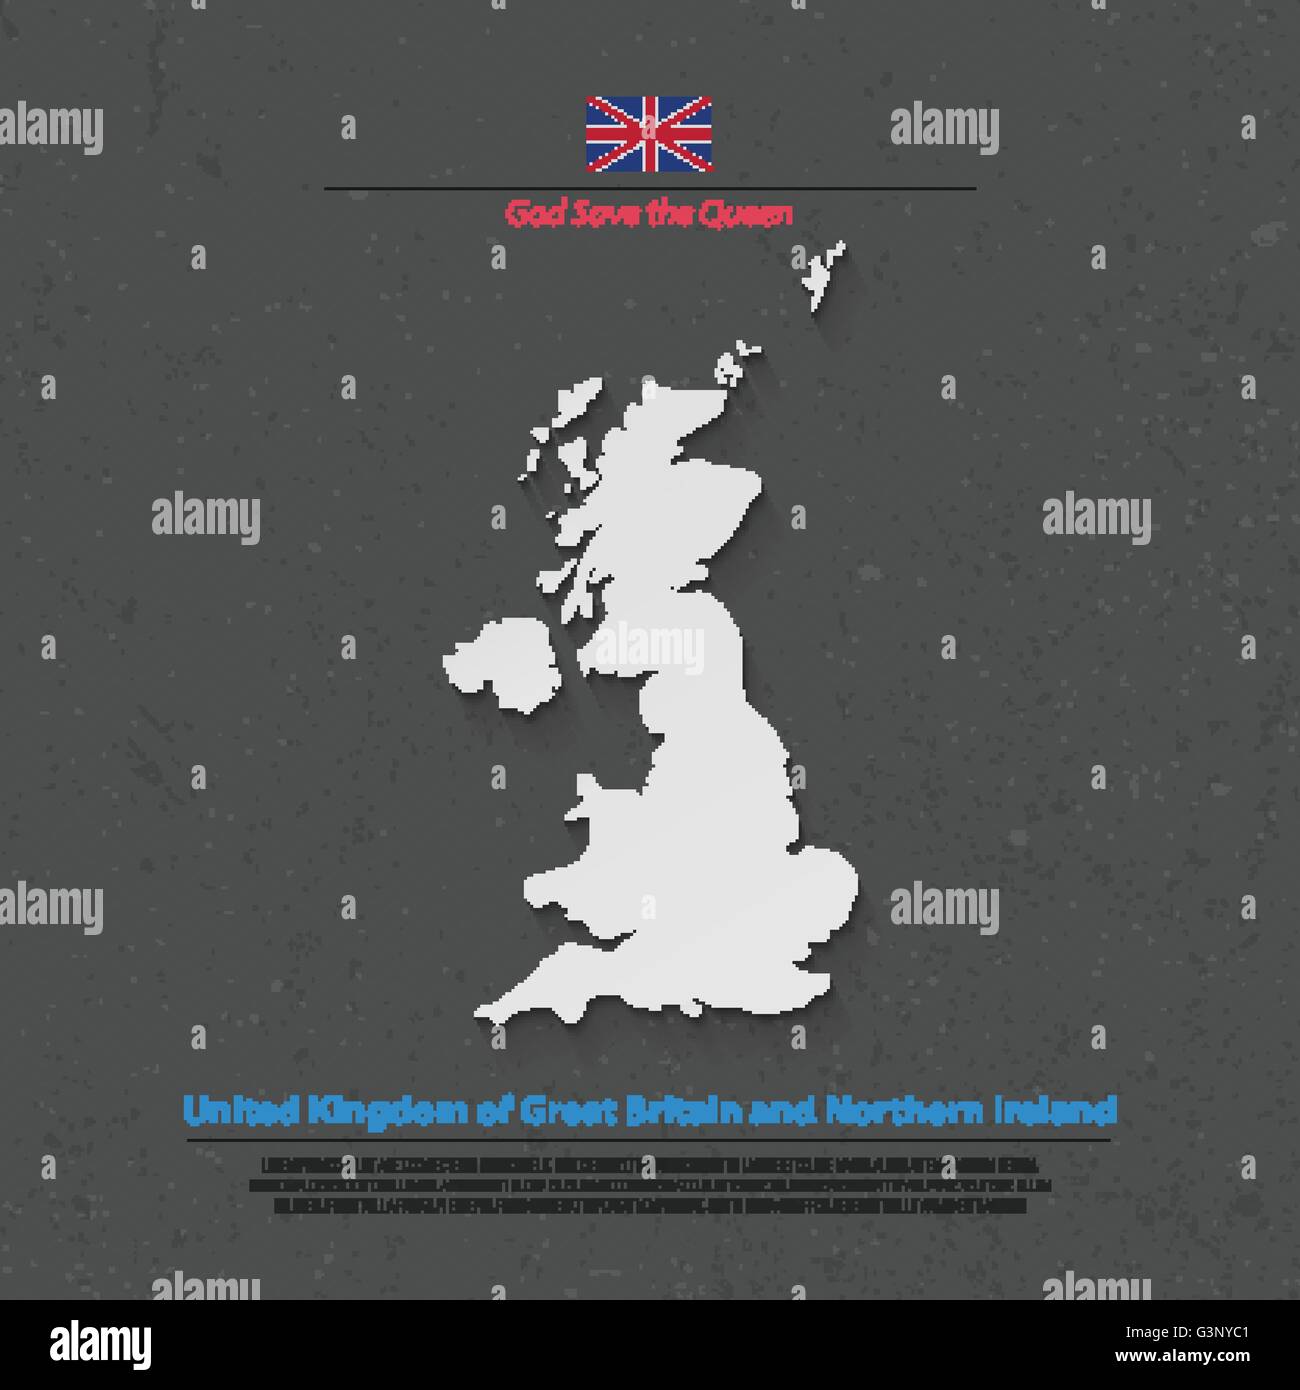 Regno Unito di Gran Bretagna e Irlanda del Nord mappa e bandiera ufficiale icone. vettore politico britannico mappa 3d'illustrazione. Illustrazione Vettoriale